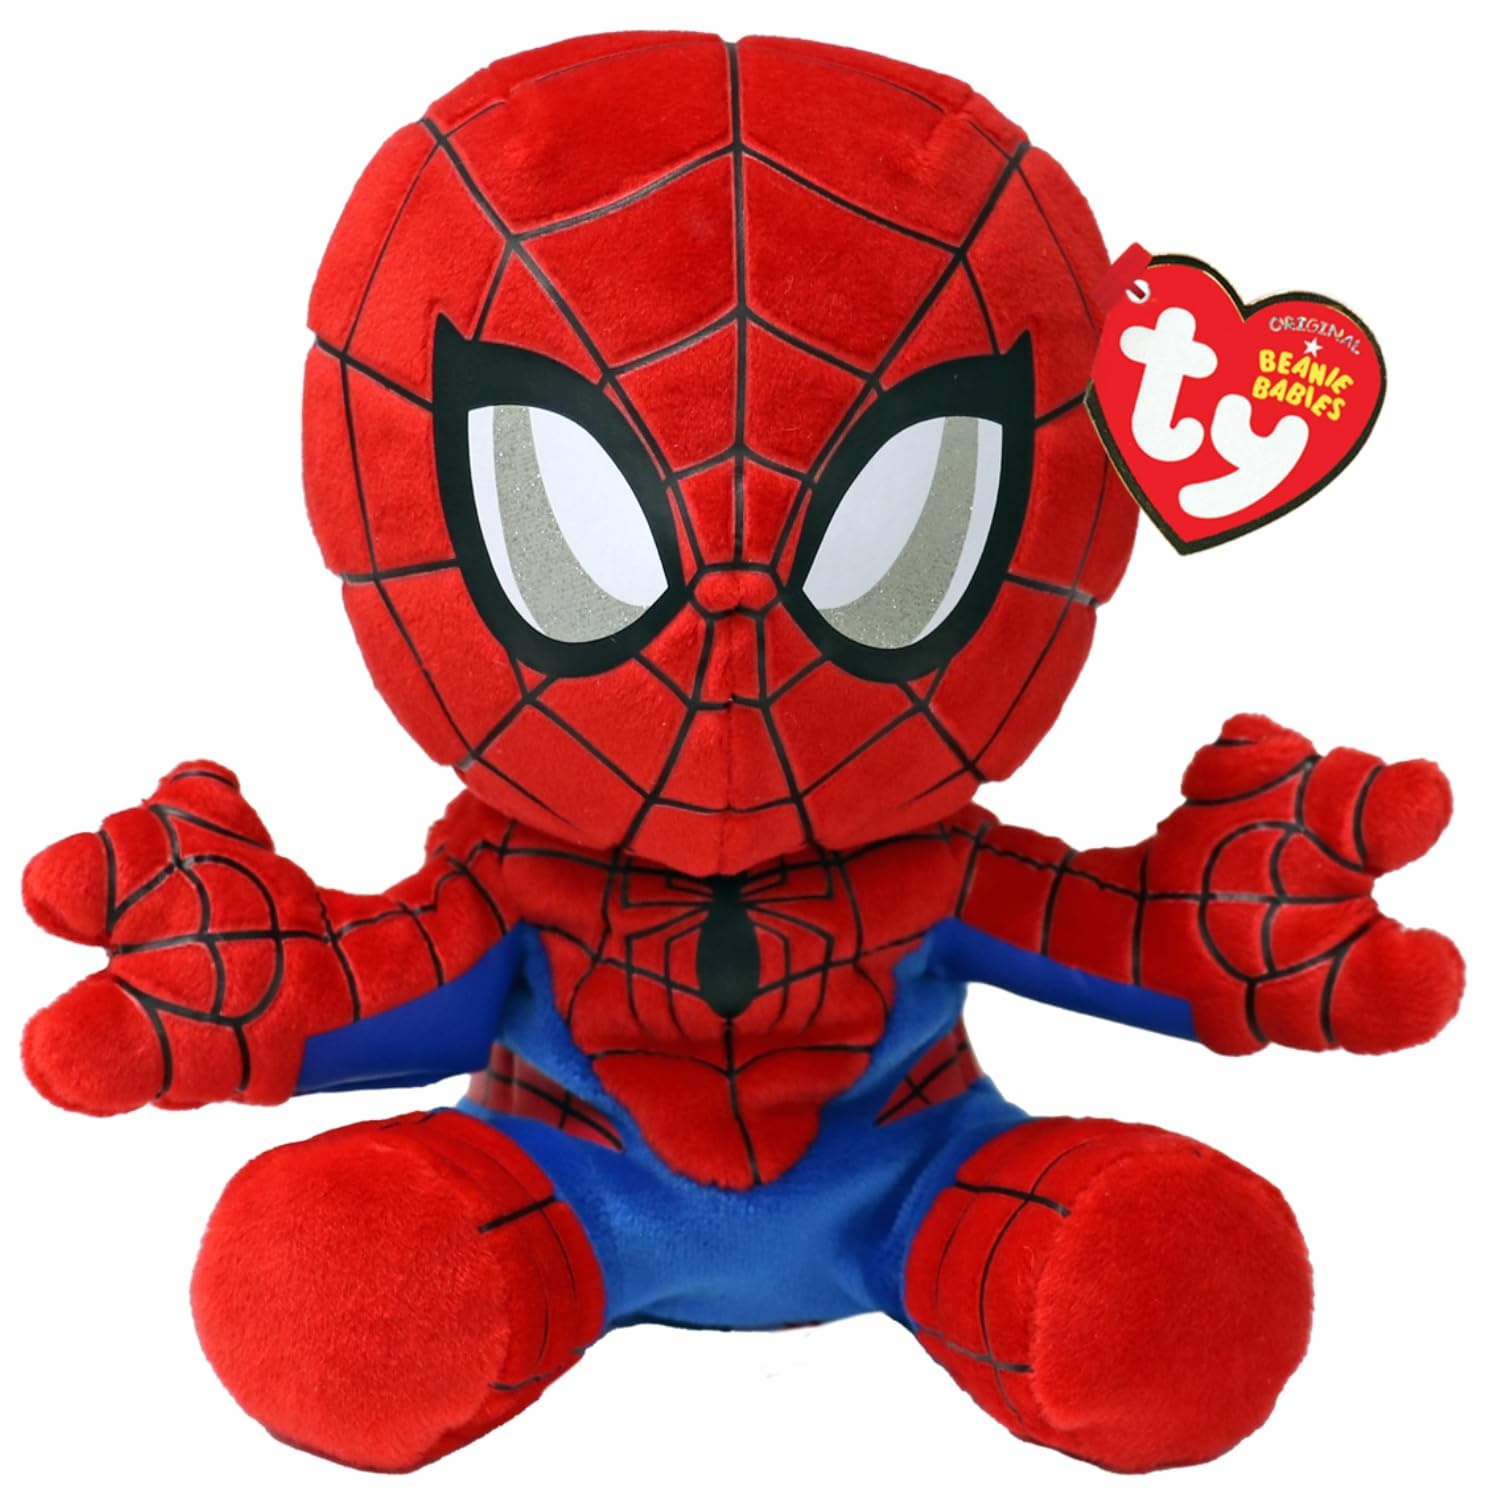 TY Spiderman Marvel Avengers Beanie Babies Regular, Lizenziertes Beanie Baby Weichplüsch Spielzeug, Sammlerstück Kuscheliger Plüschteddy